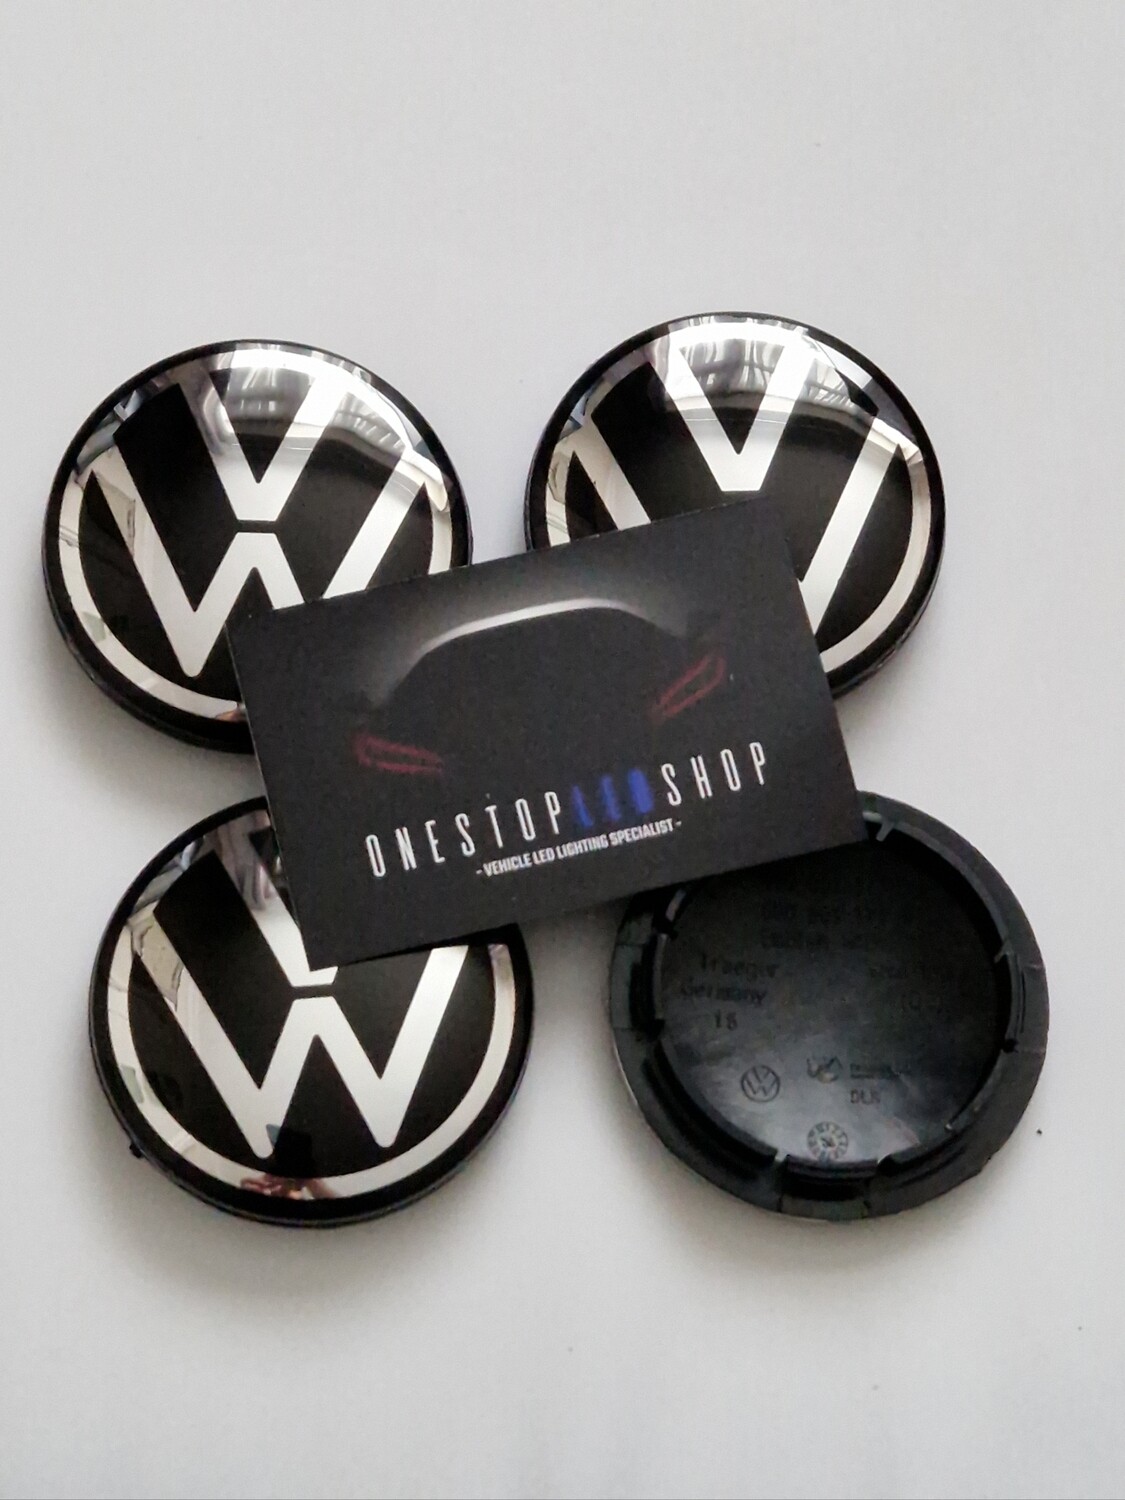 4 X Volkswagen 6CD 601 171 56mm Alloy wheel center hub caps